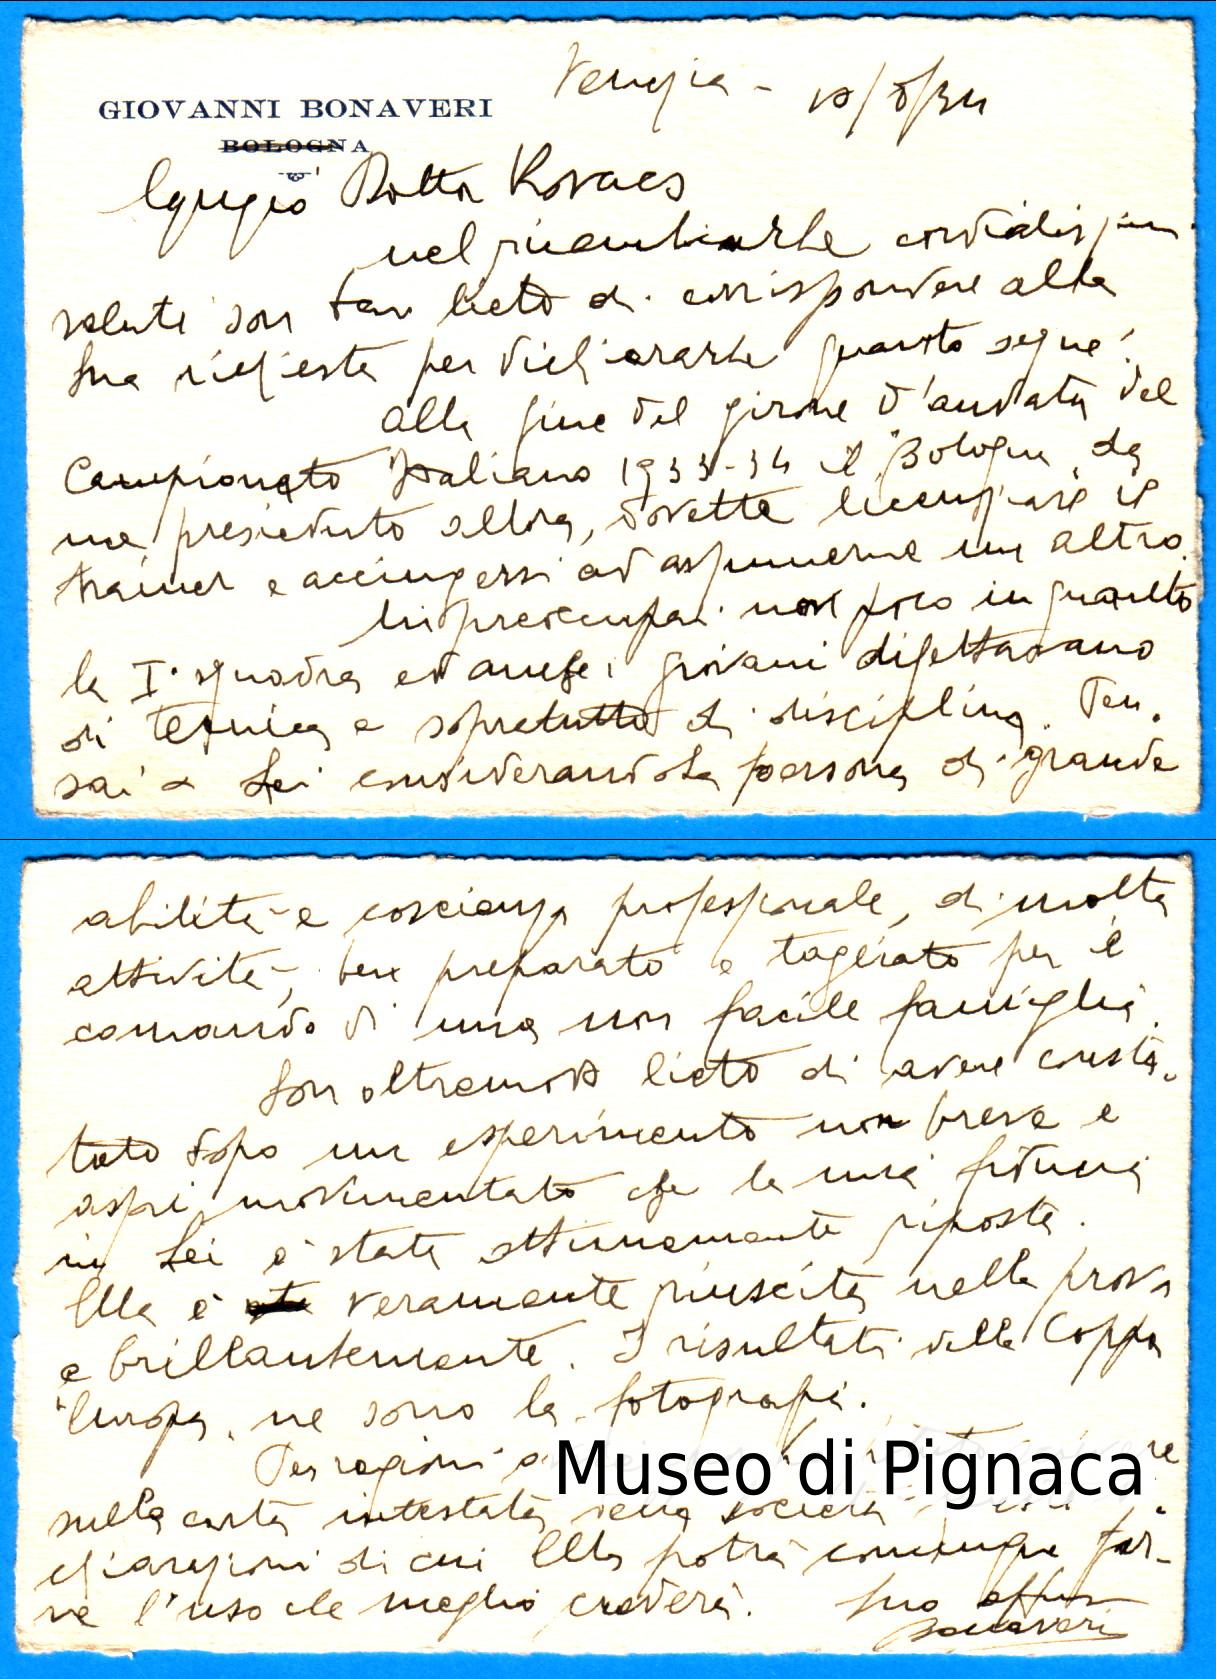 1934 Cartolina autografa del Presidente Bonaveri indirizzata a Kovacs